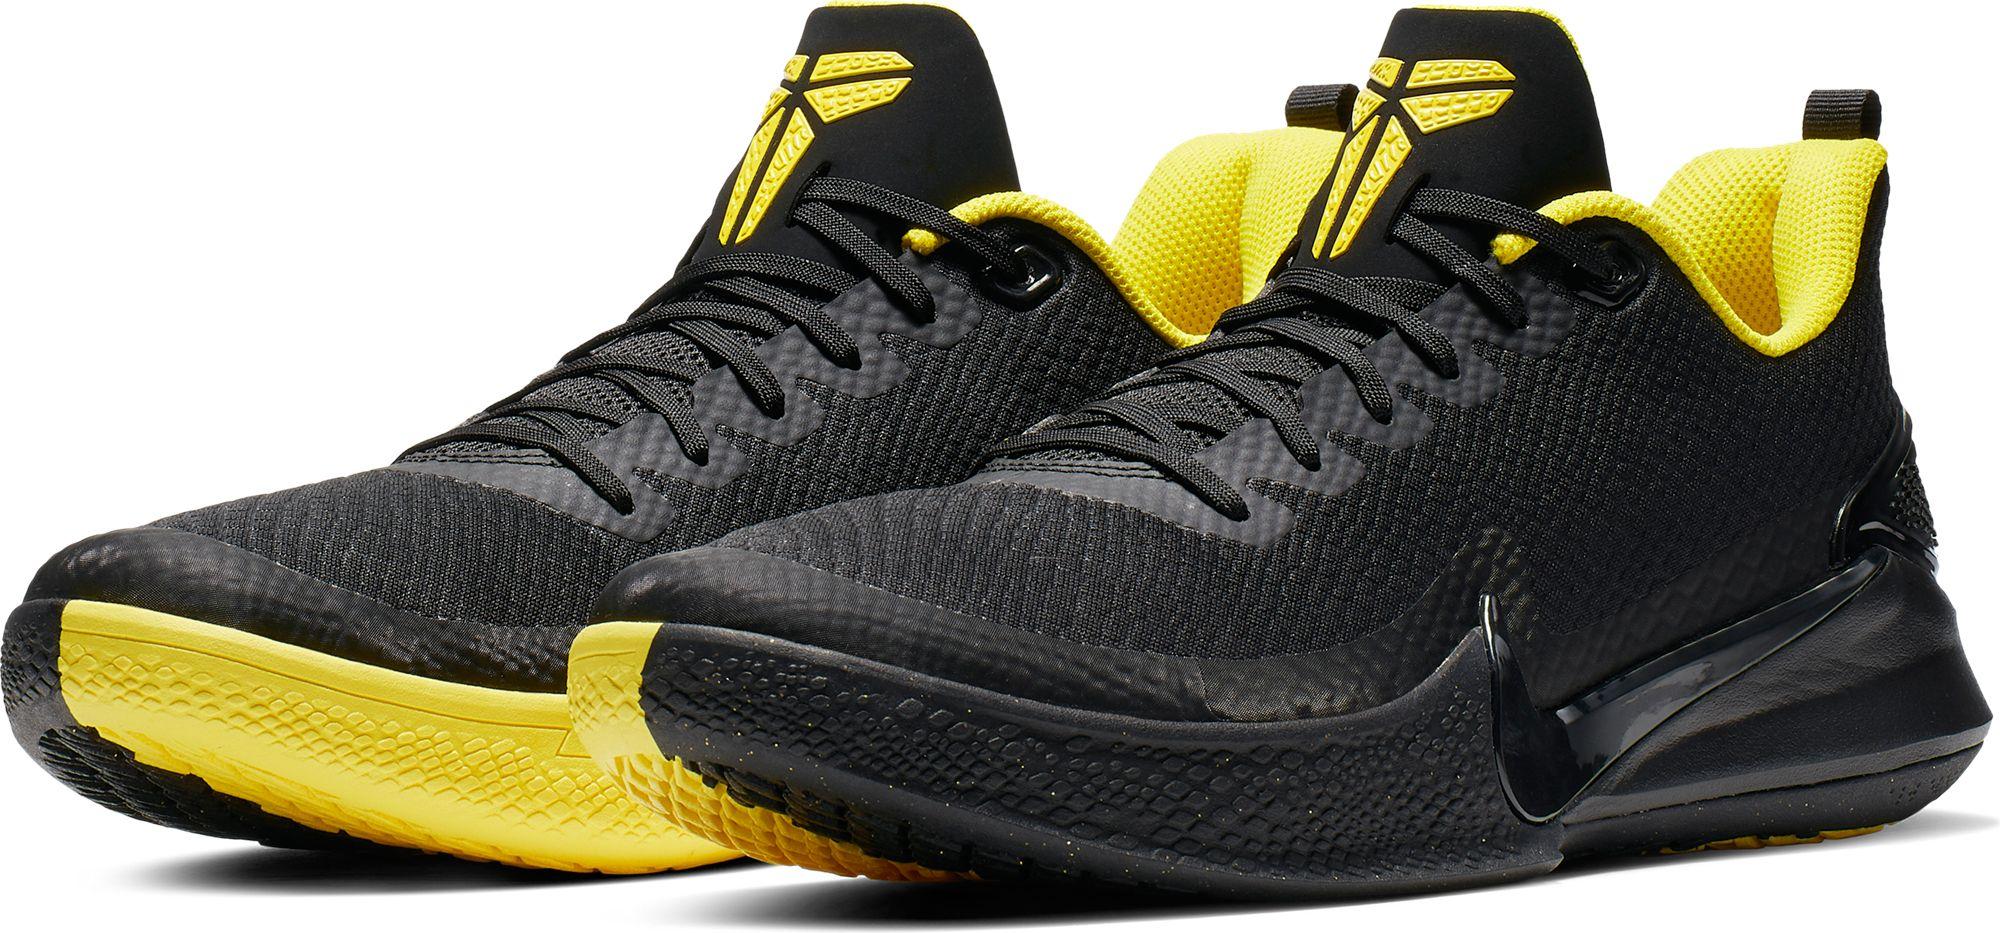 kobe black basketball shoes